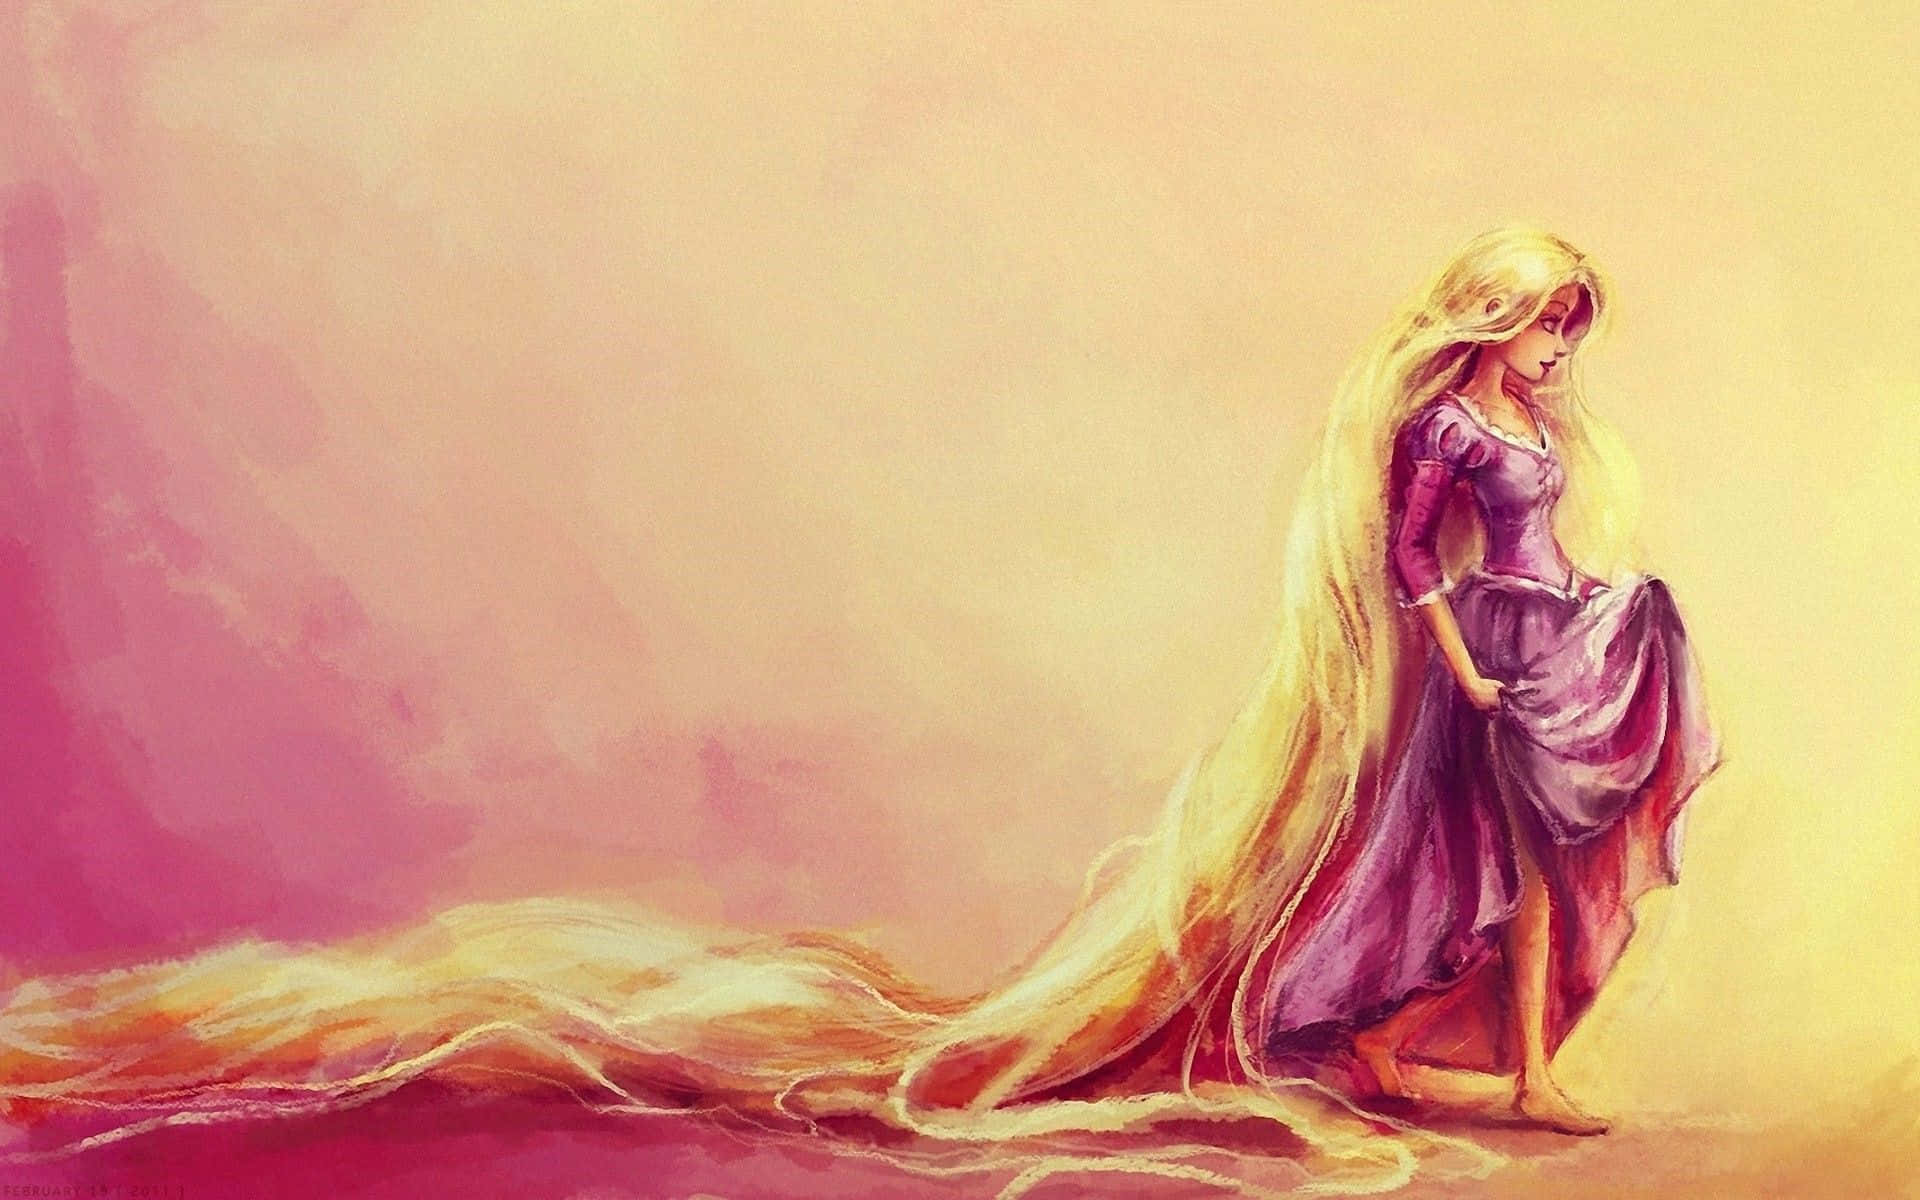 Imagende Rapunzel, La Princesa De Disney, Con Su Largo Cabello